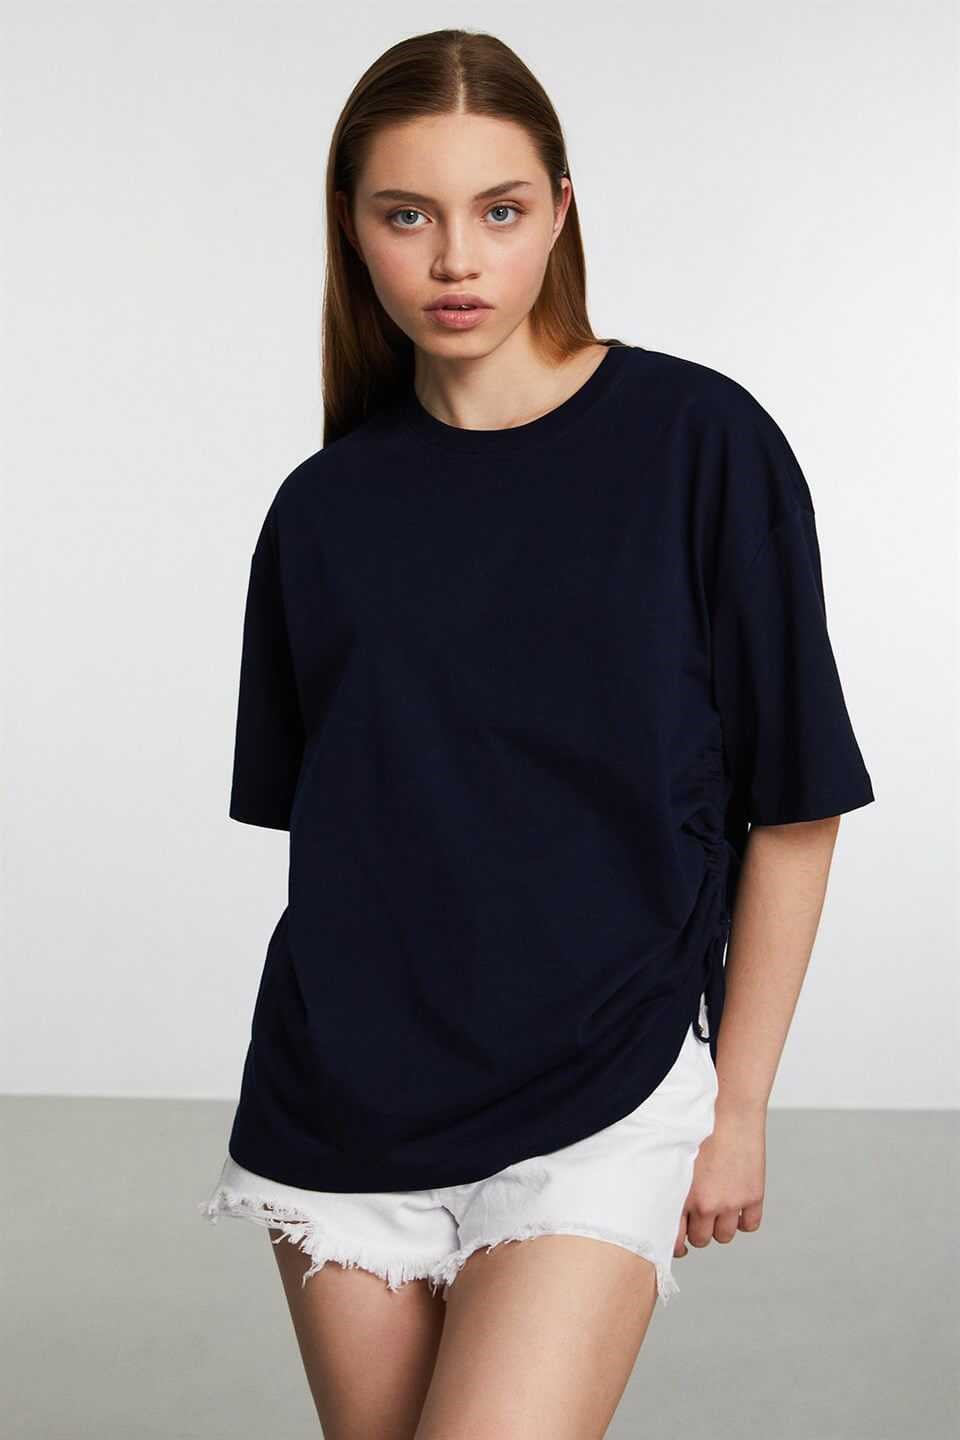 Durban Kadın Lacivert Düz Renk Yuvarlak Yaka Oversize T-Shirt